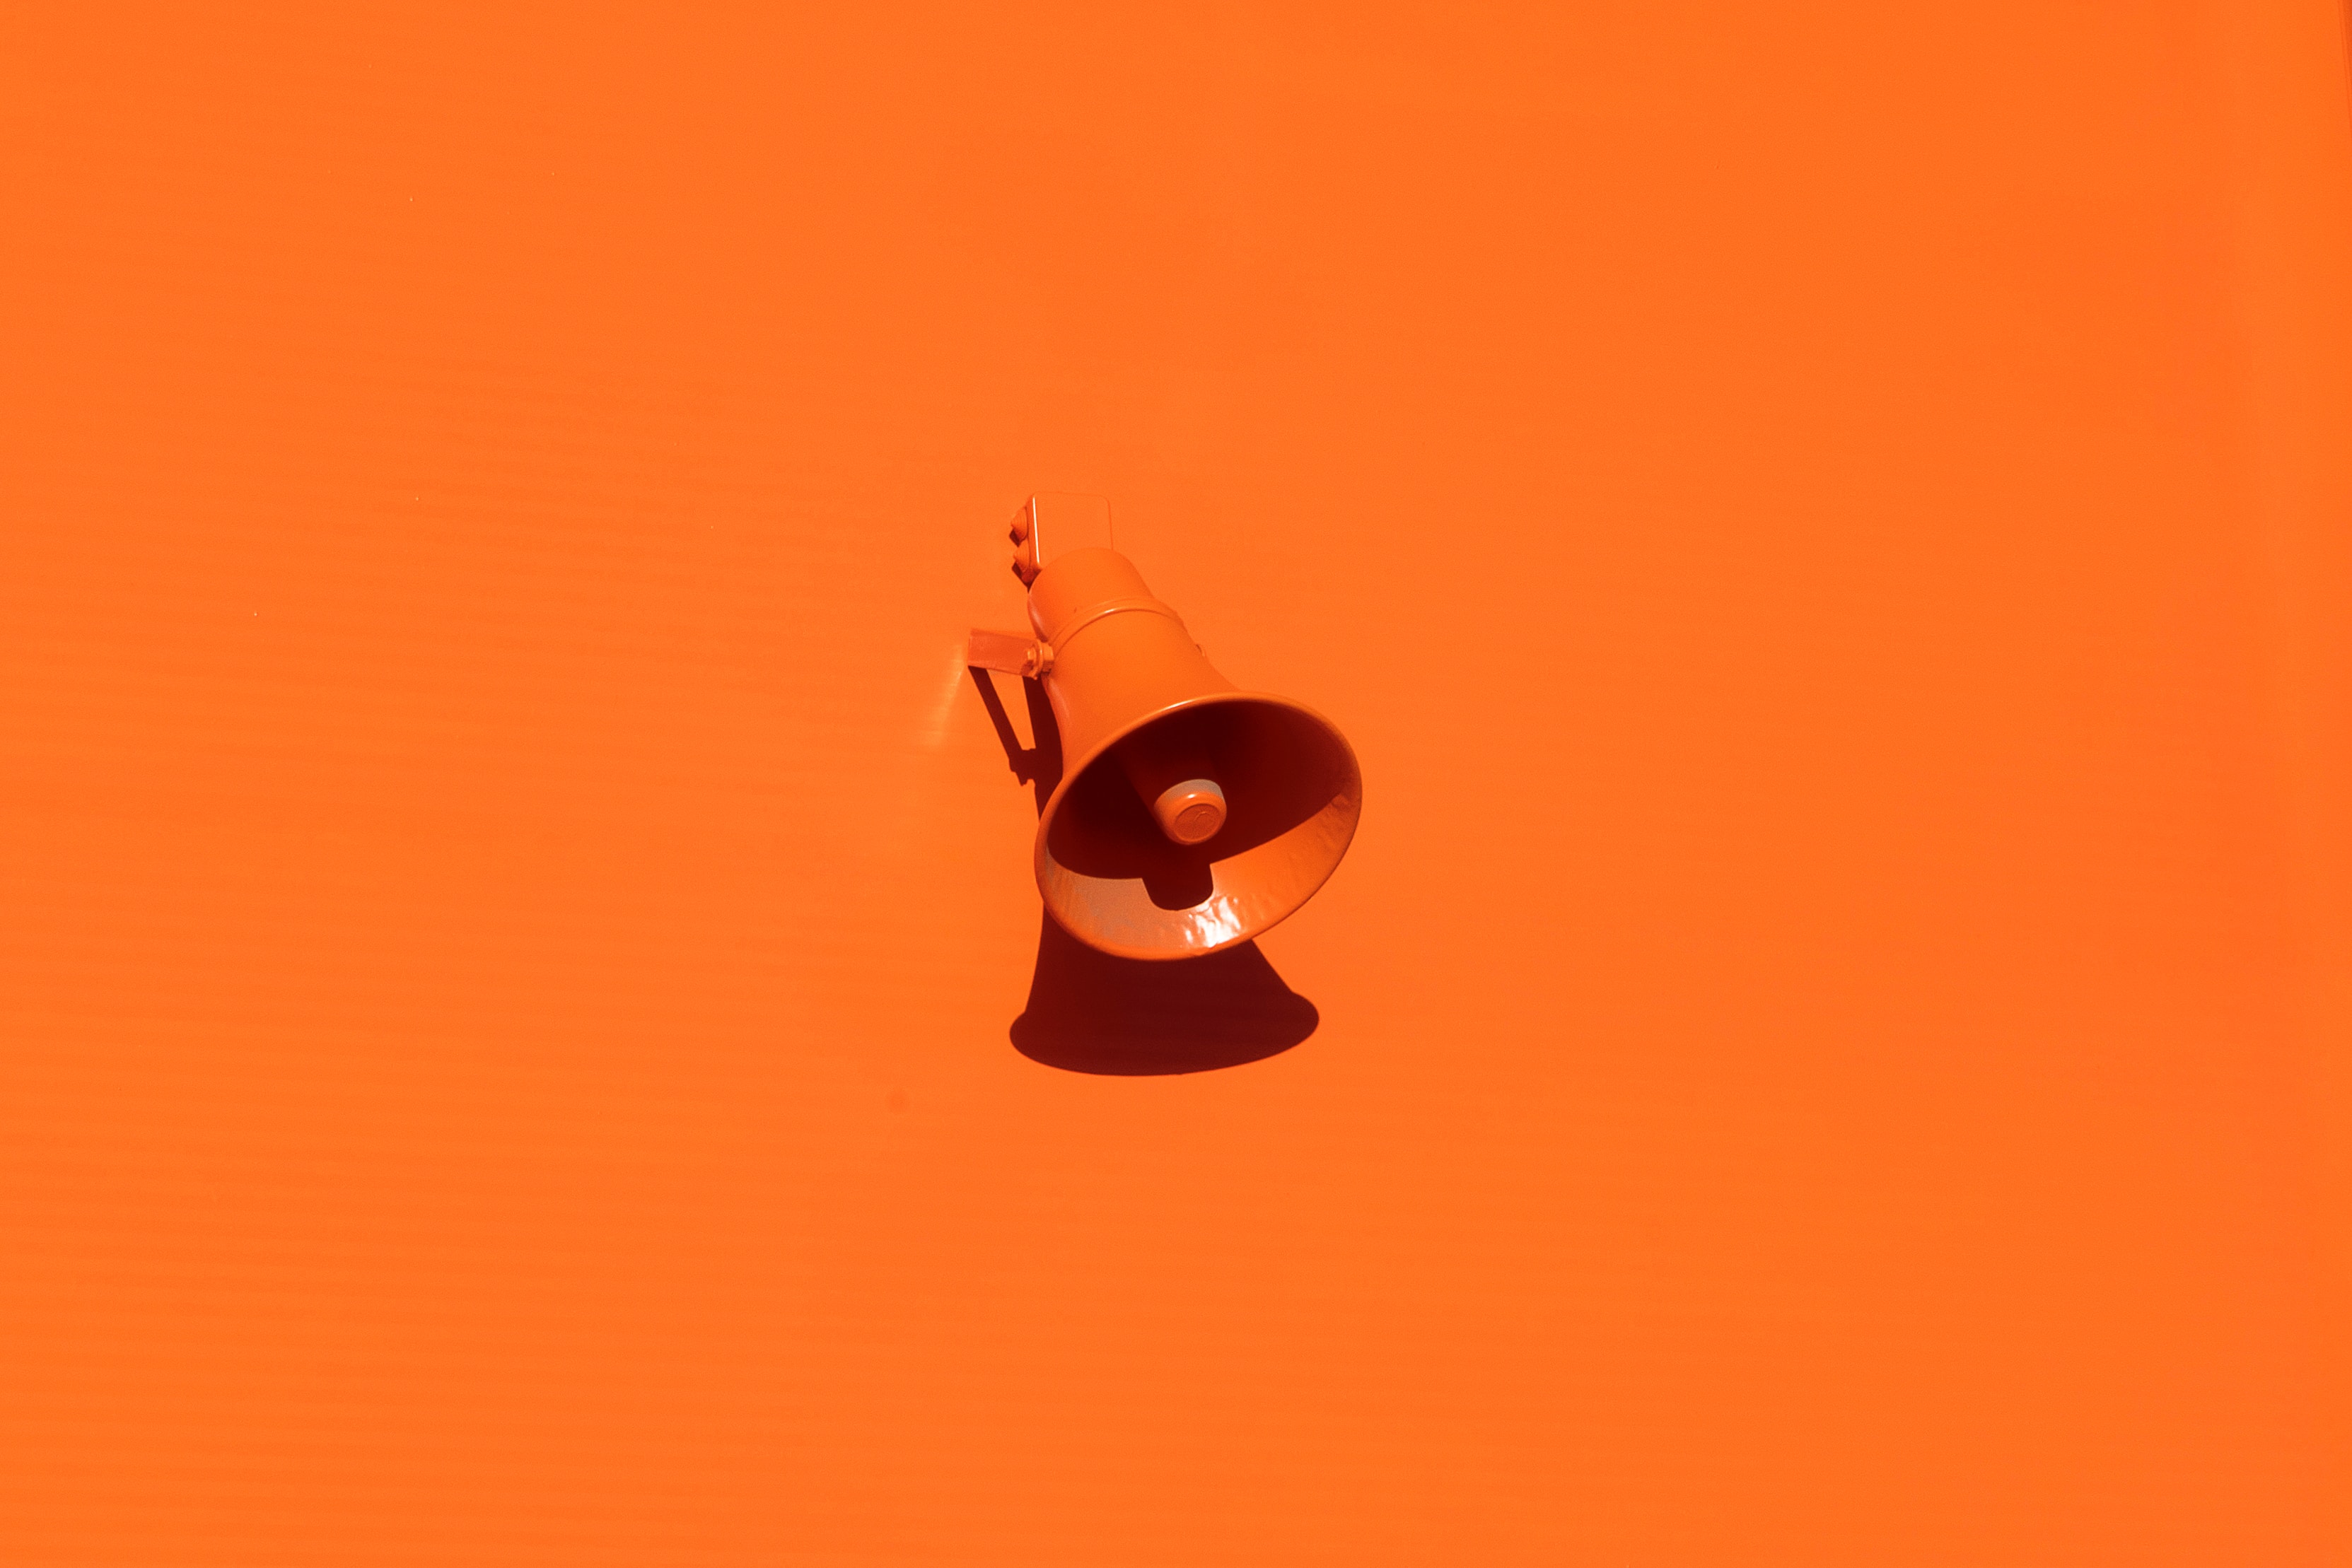 Orange megaphone sitting on orange background